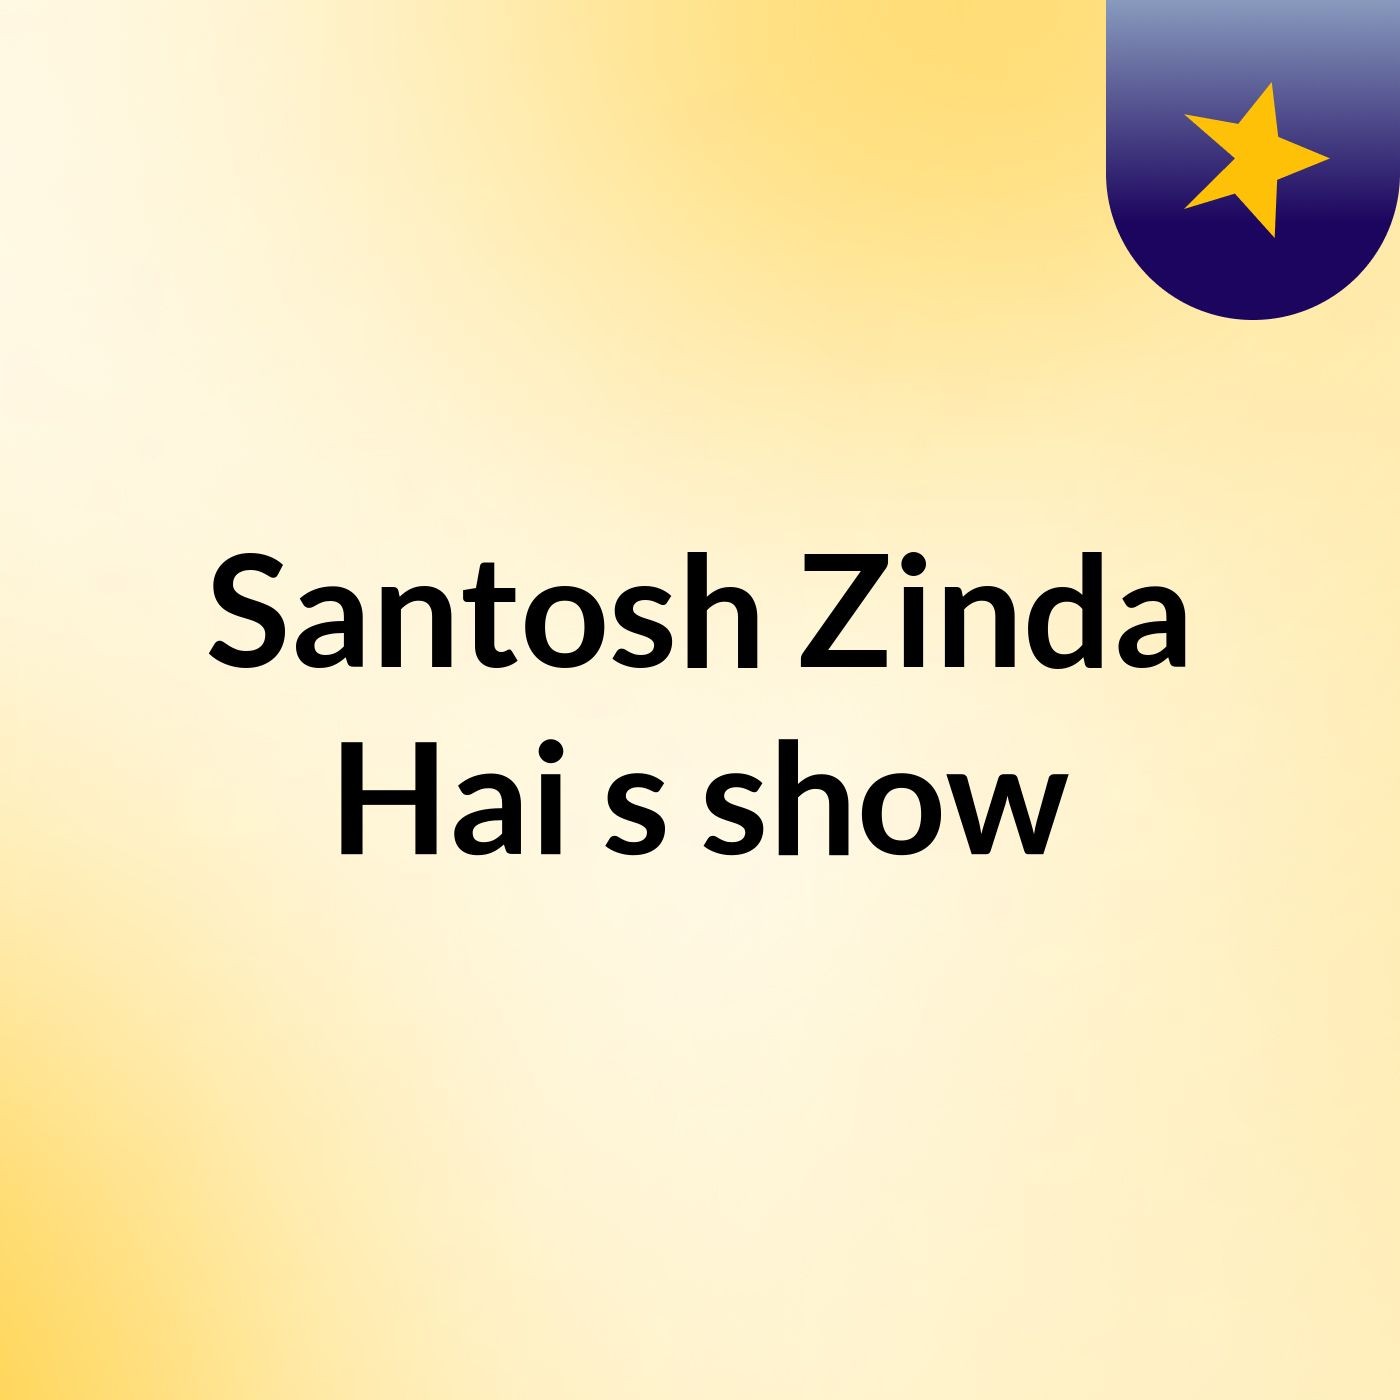 Santosh Zinda Hai's show